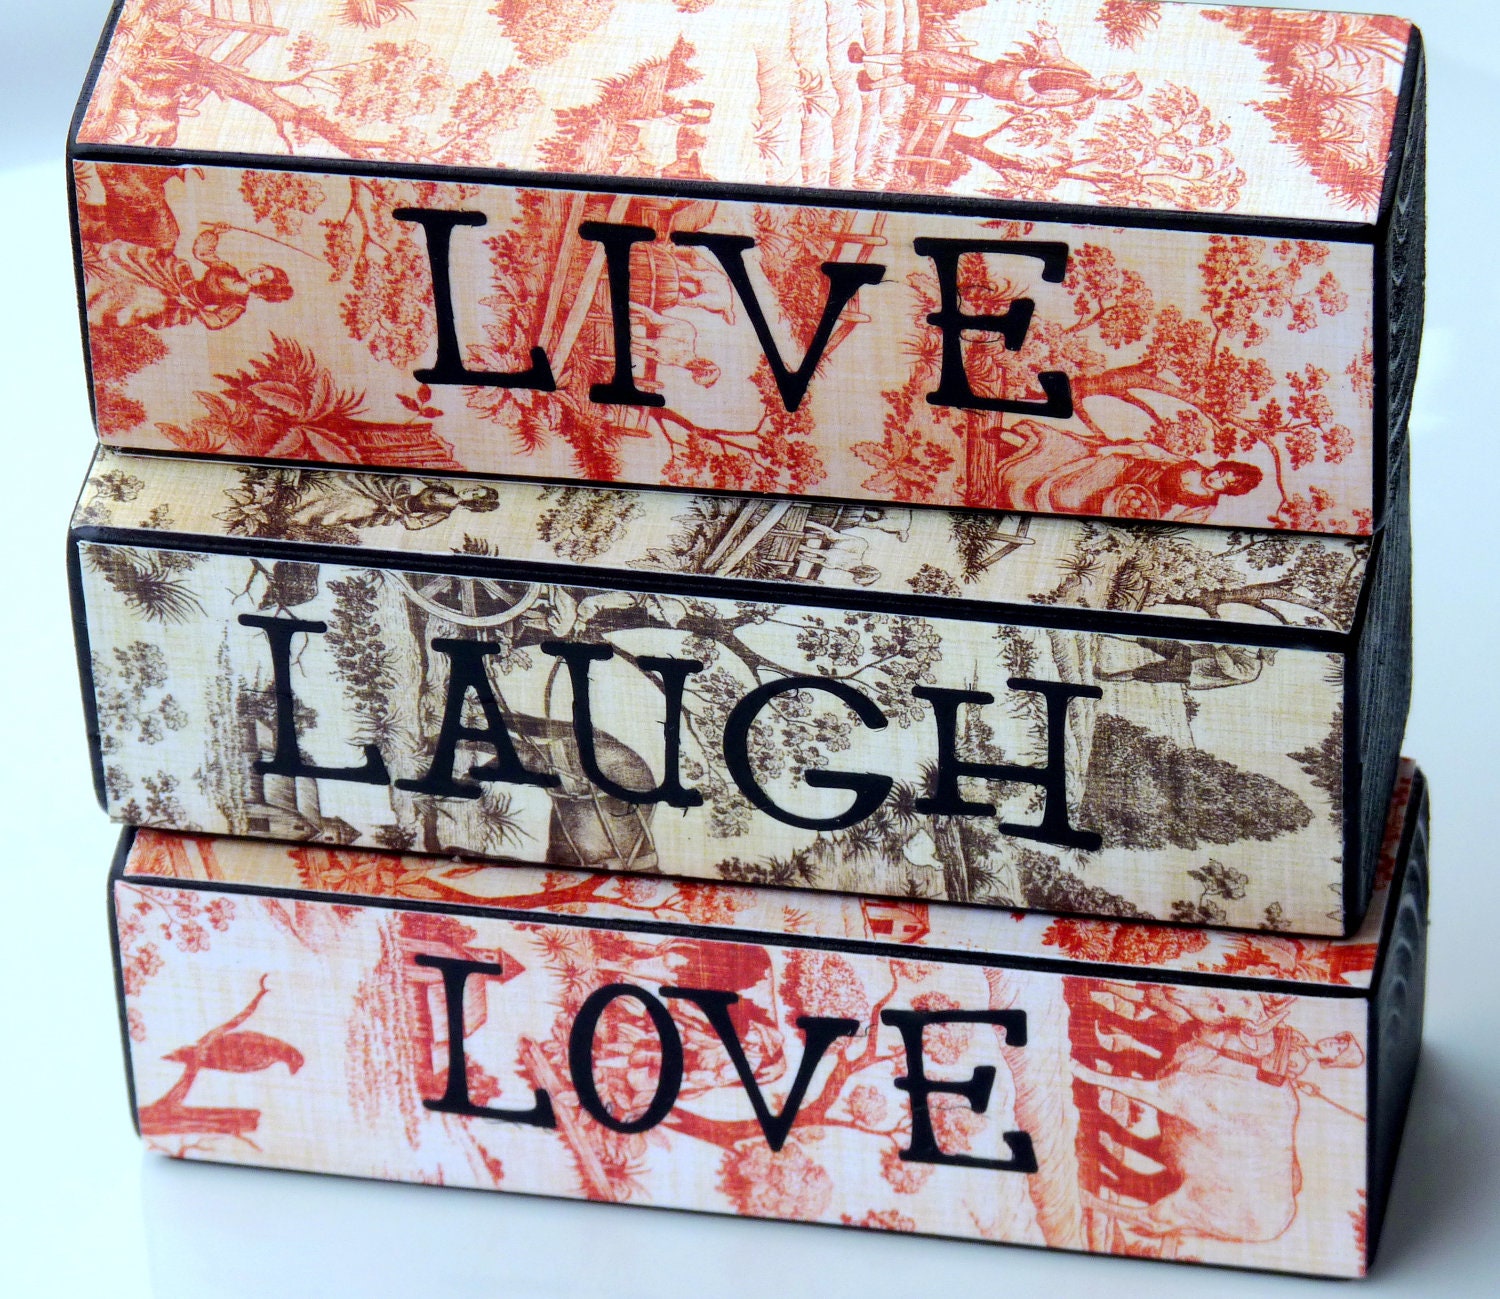 Live, Laugh, Love Decorative Block Set - Home Decor - Mantle Decorations - Decorative Gift - Office Decor - Dorm Decor